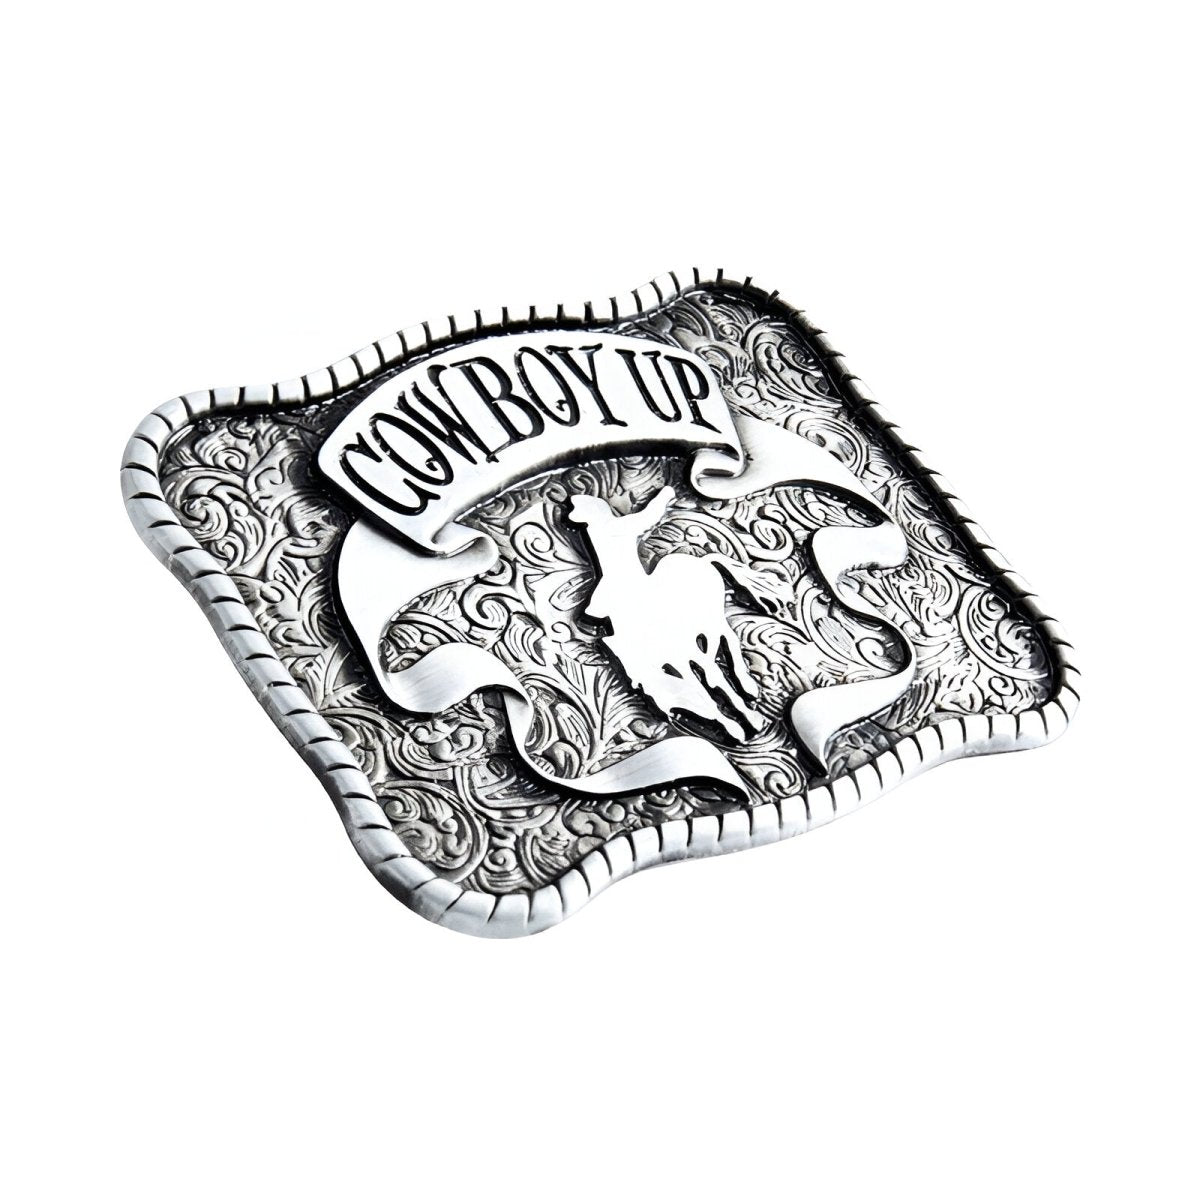 Boucle de ceinture Western, "Cowboy UP", modèle Bridger - La Boutique de la Ceinture